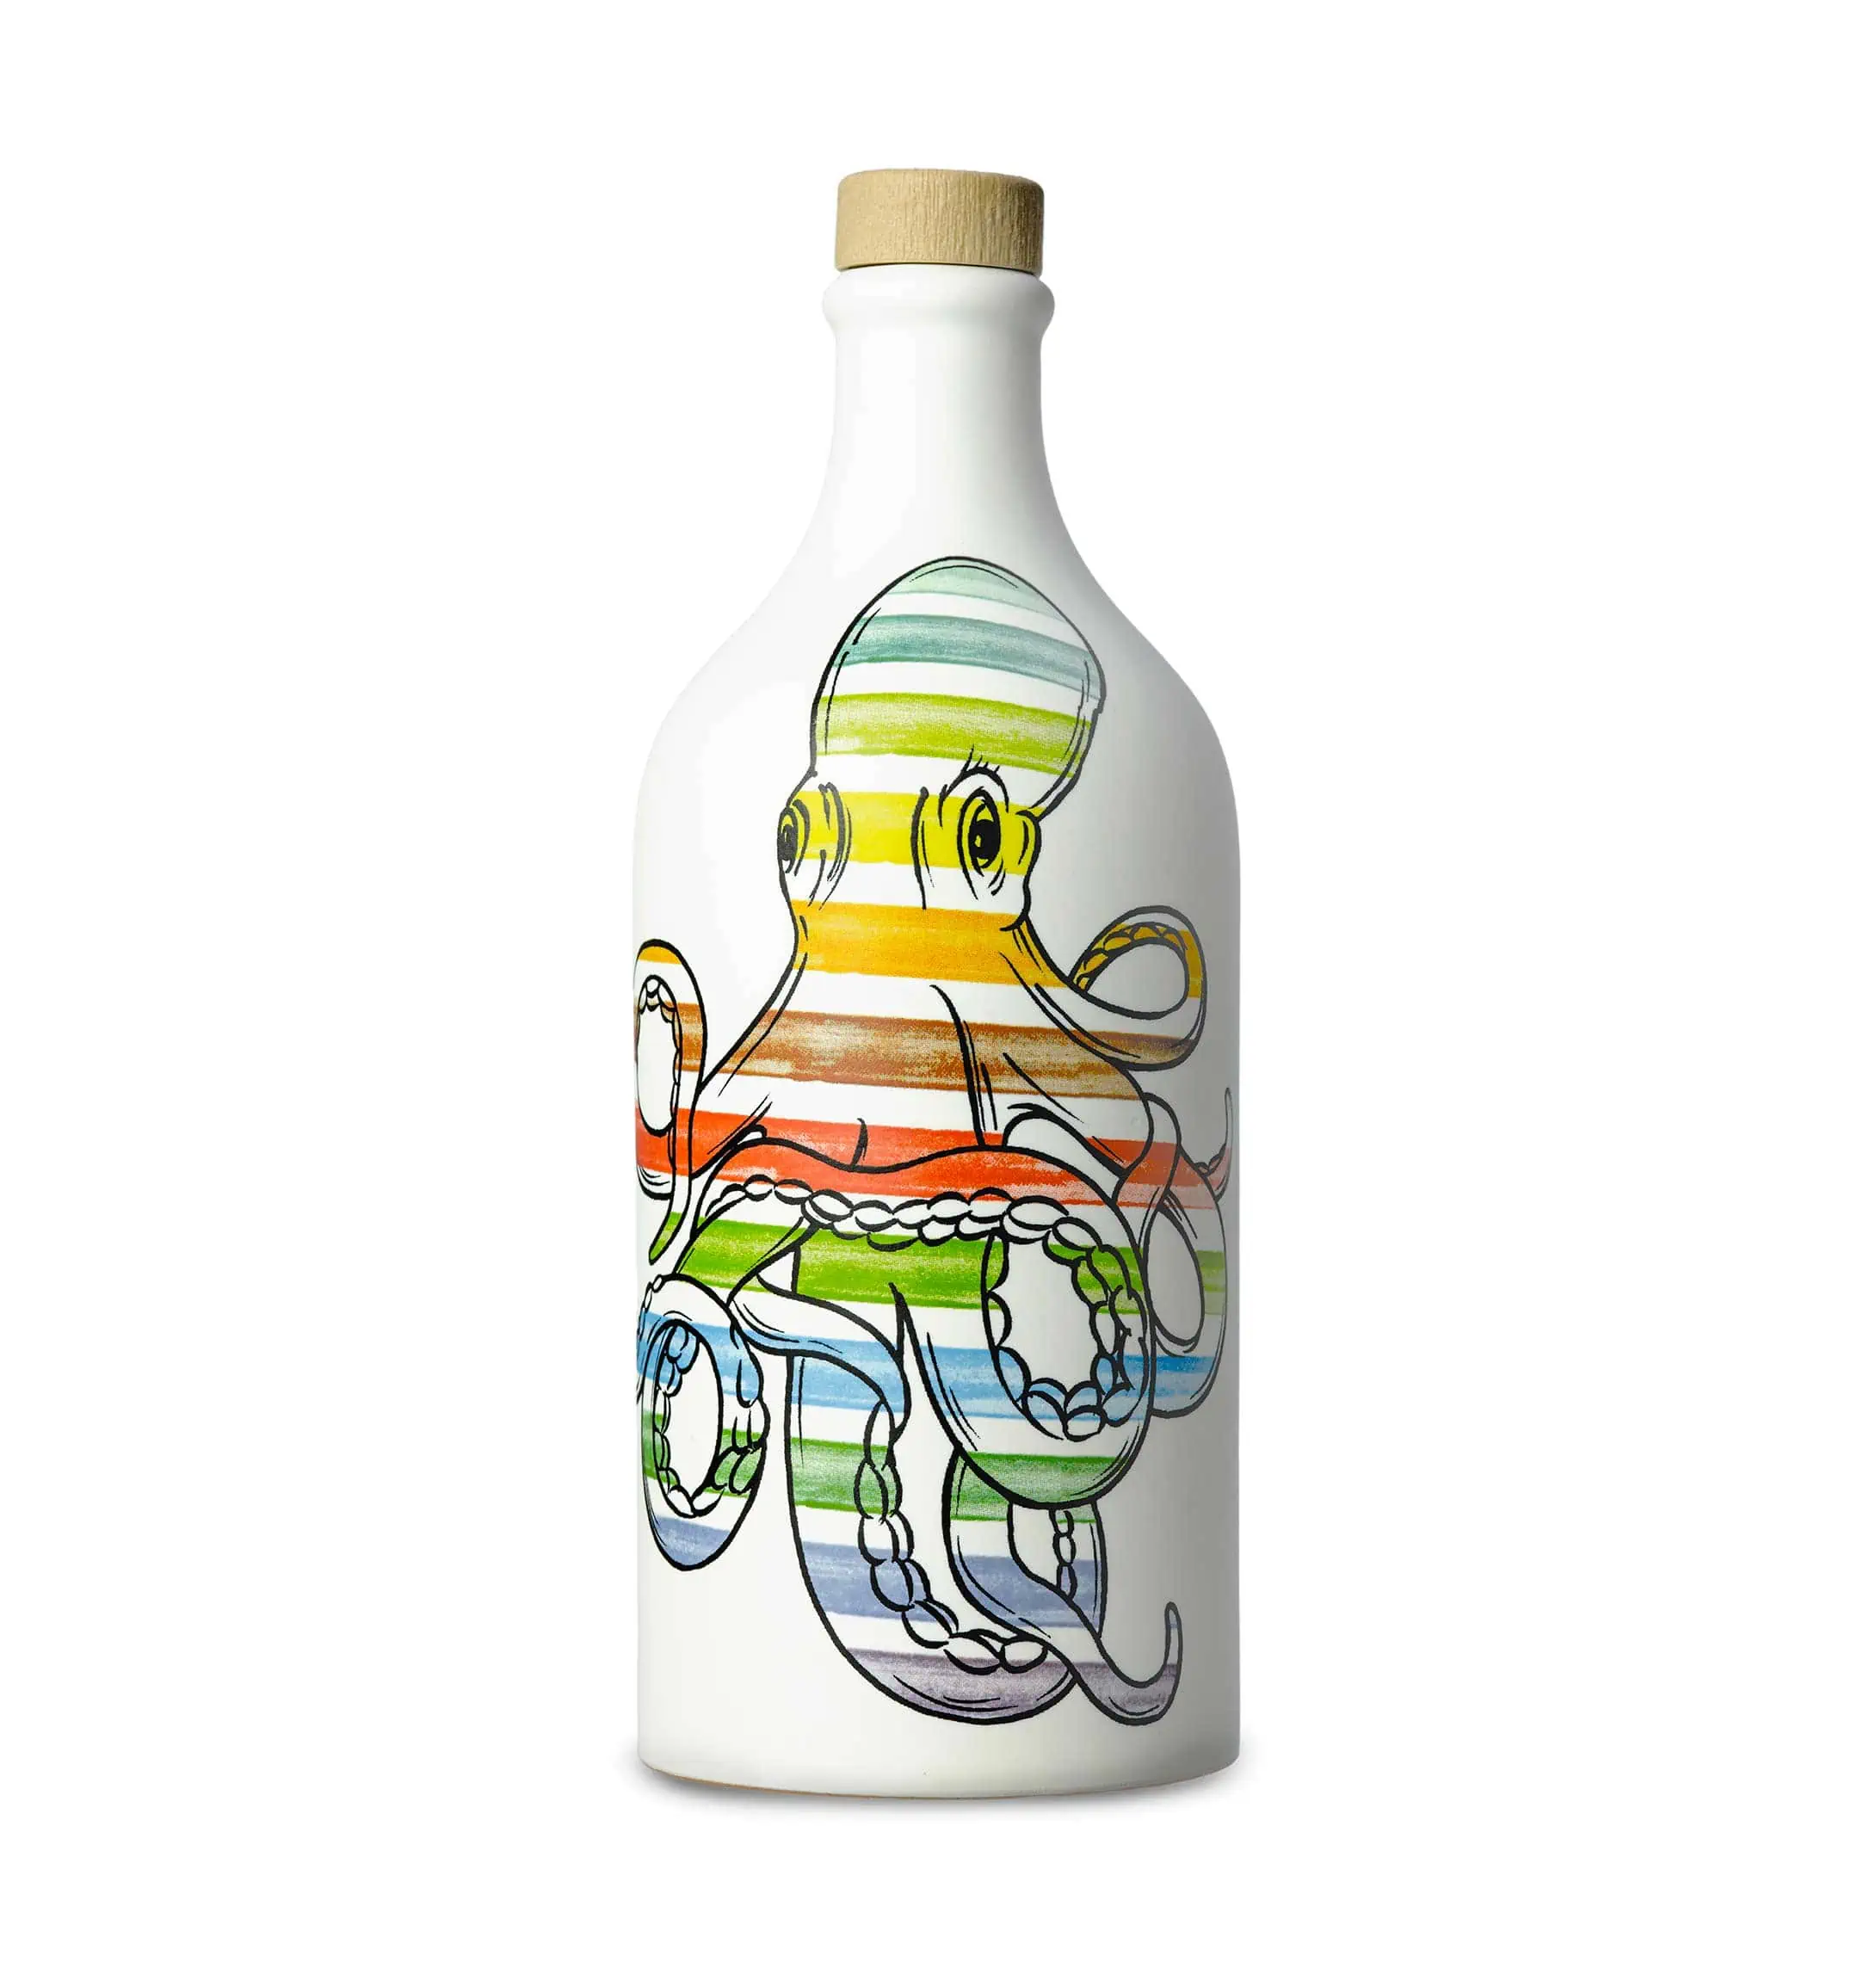 義大利特級初榨橄欖油 章魚瓶500ml - (中等風味)